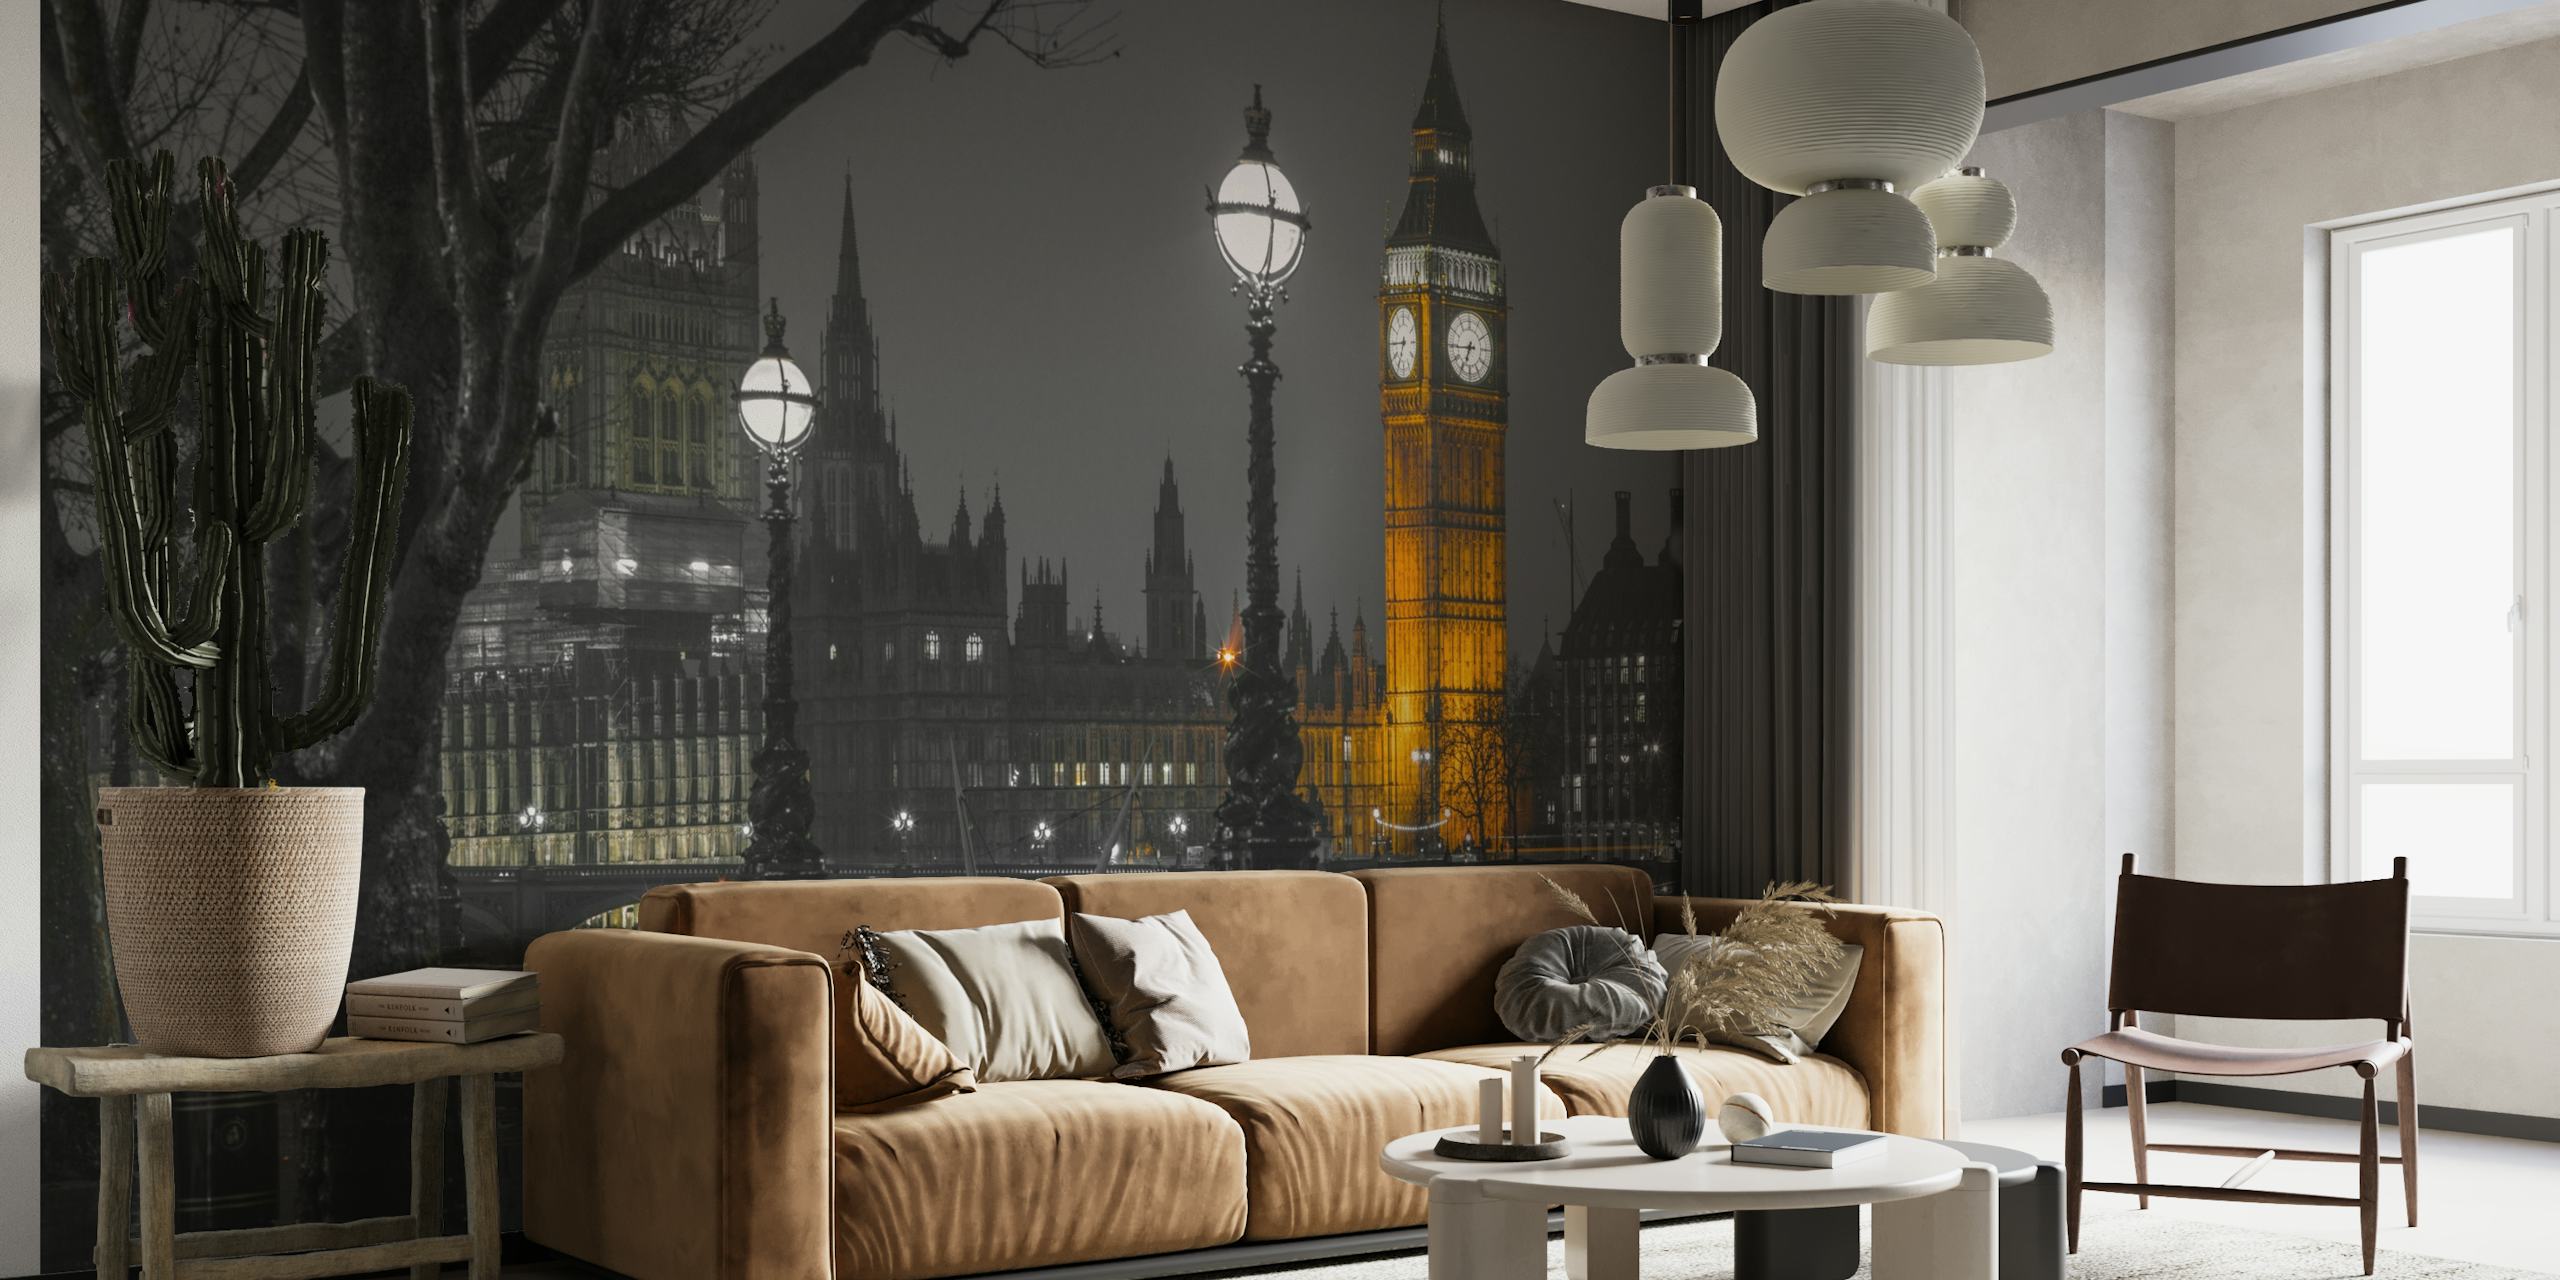 Papier peint noir et blanc du paysage urbain de Londres au crépuscule avec la tour Elizabeth illuminée